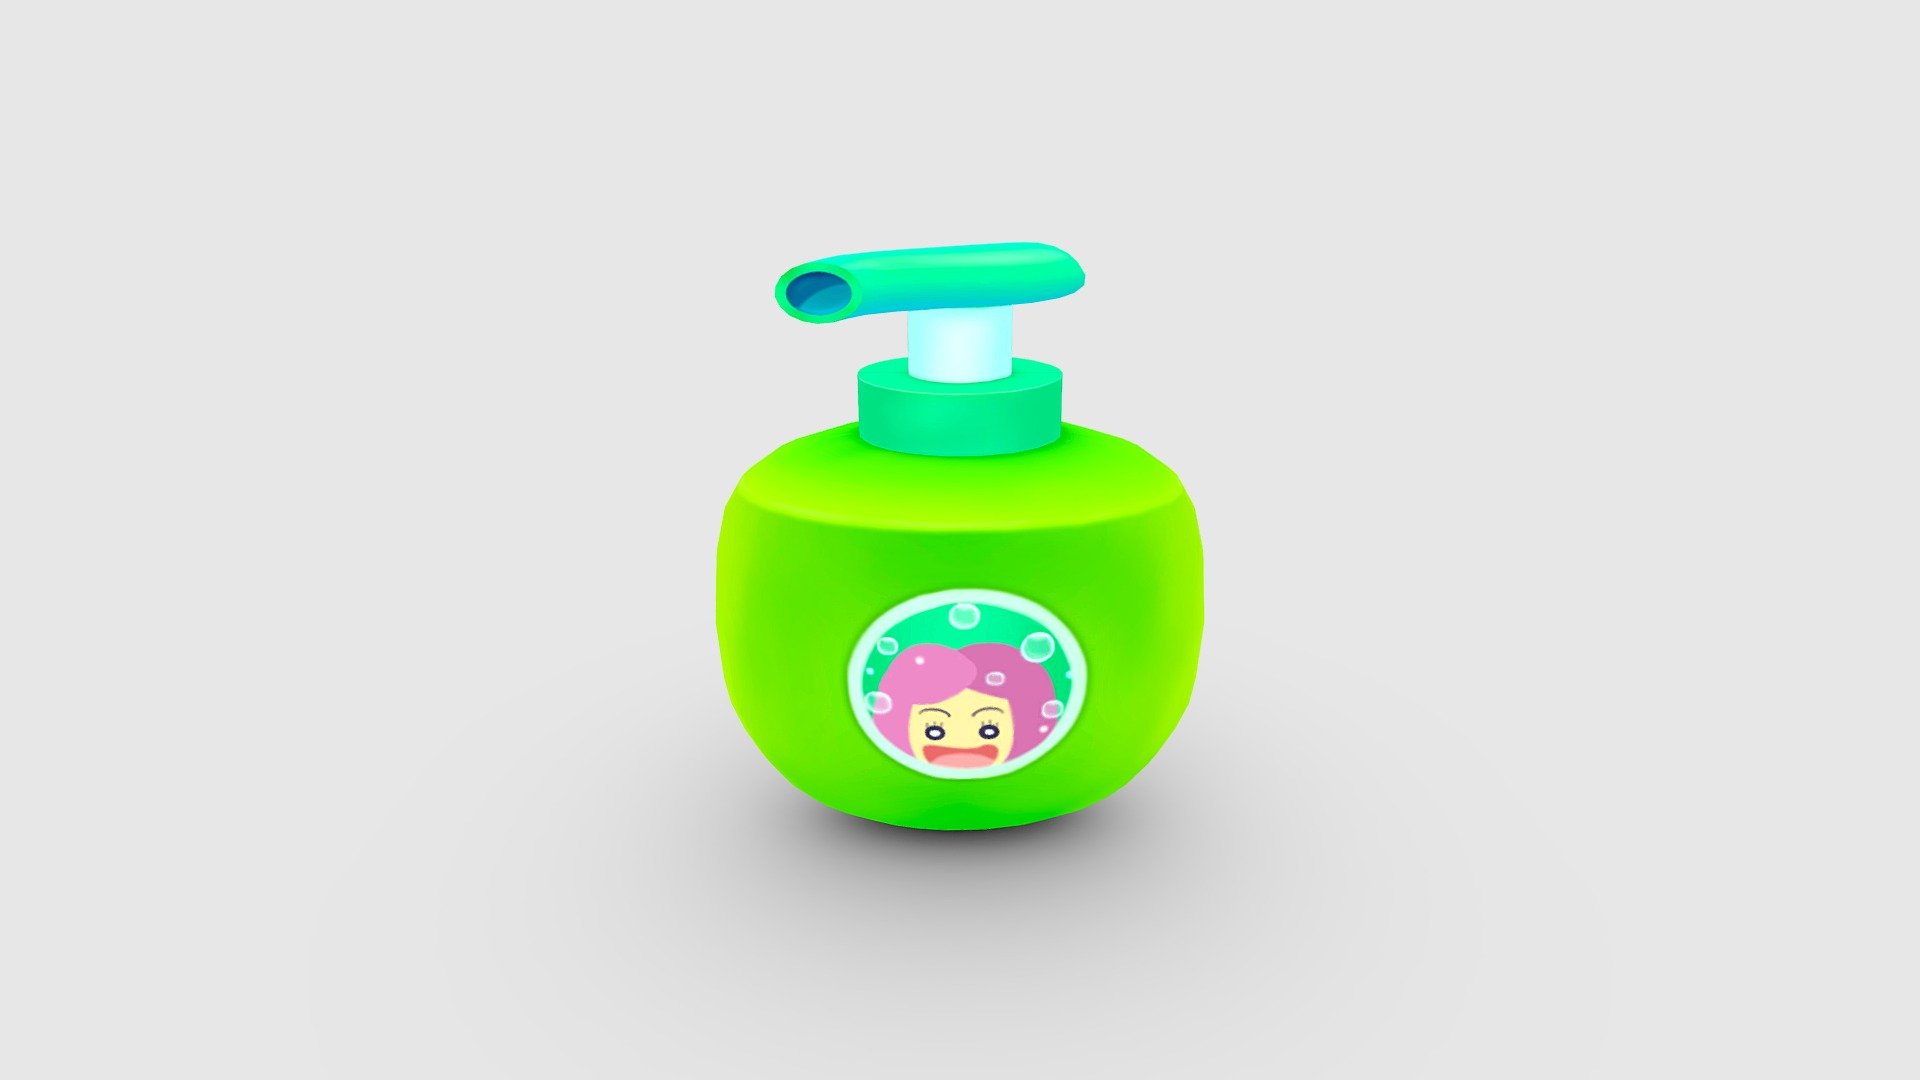 Cartoon Shower Gel - shower jell - bath lotion Low-poly 3D model - Cartoon Shower Gel - shower jell - bath lotion - 3D model by ler_cartoon (@lerrrrr) 3d model